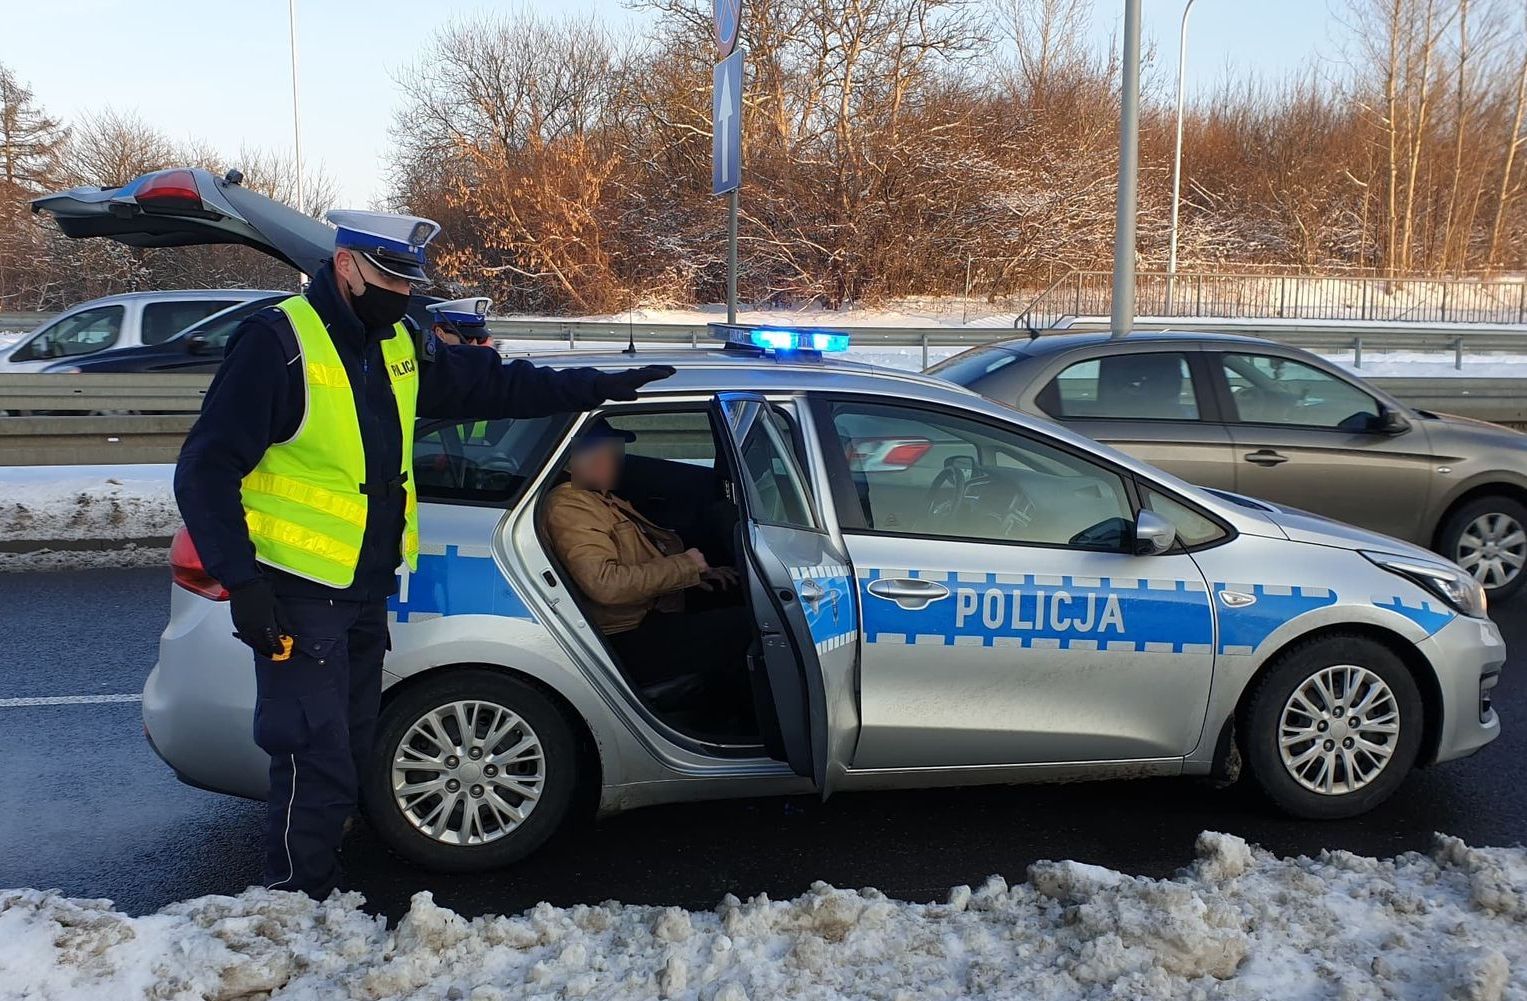 Pijany kierowca narozrabiał na wjeździe do Lublina. Zepchnął hyundaia w bariery, usiłował odjechać (zdjęcia)